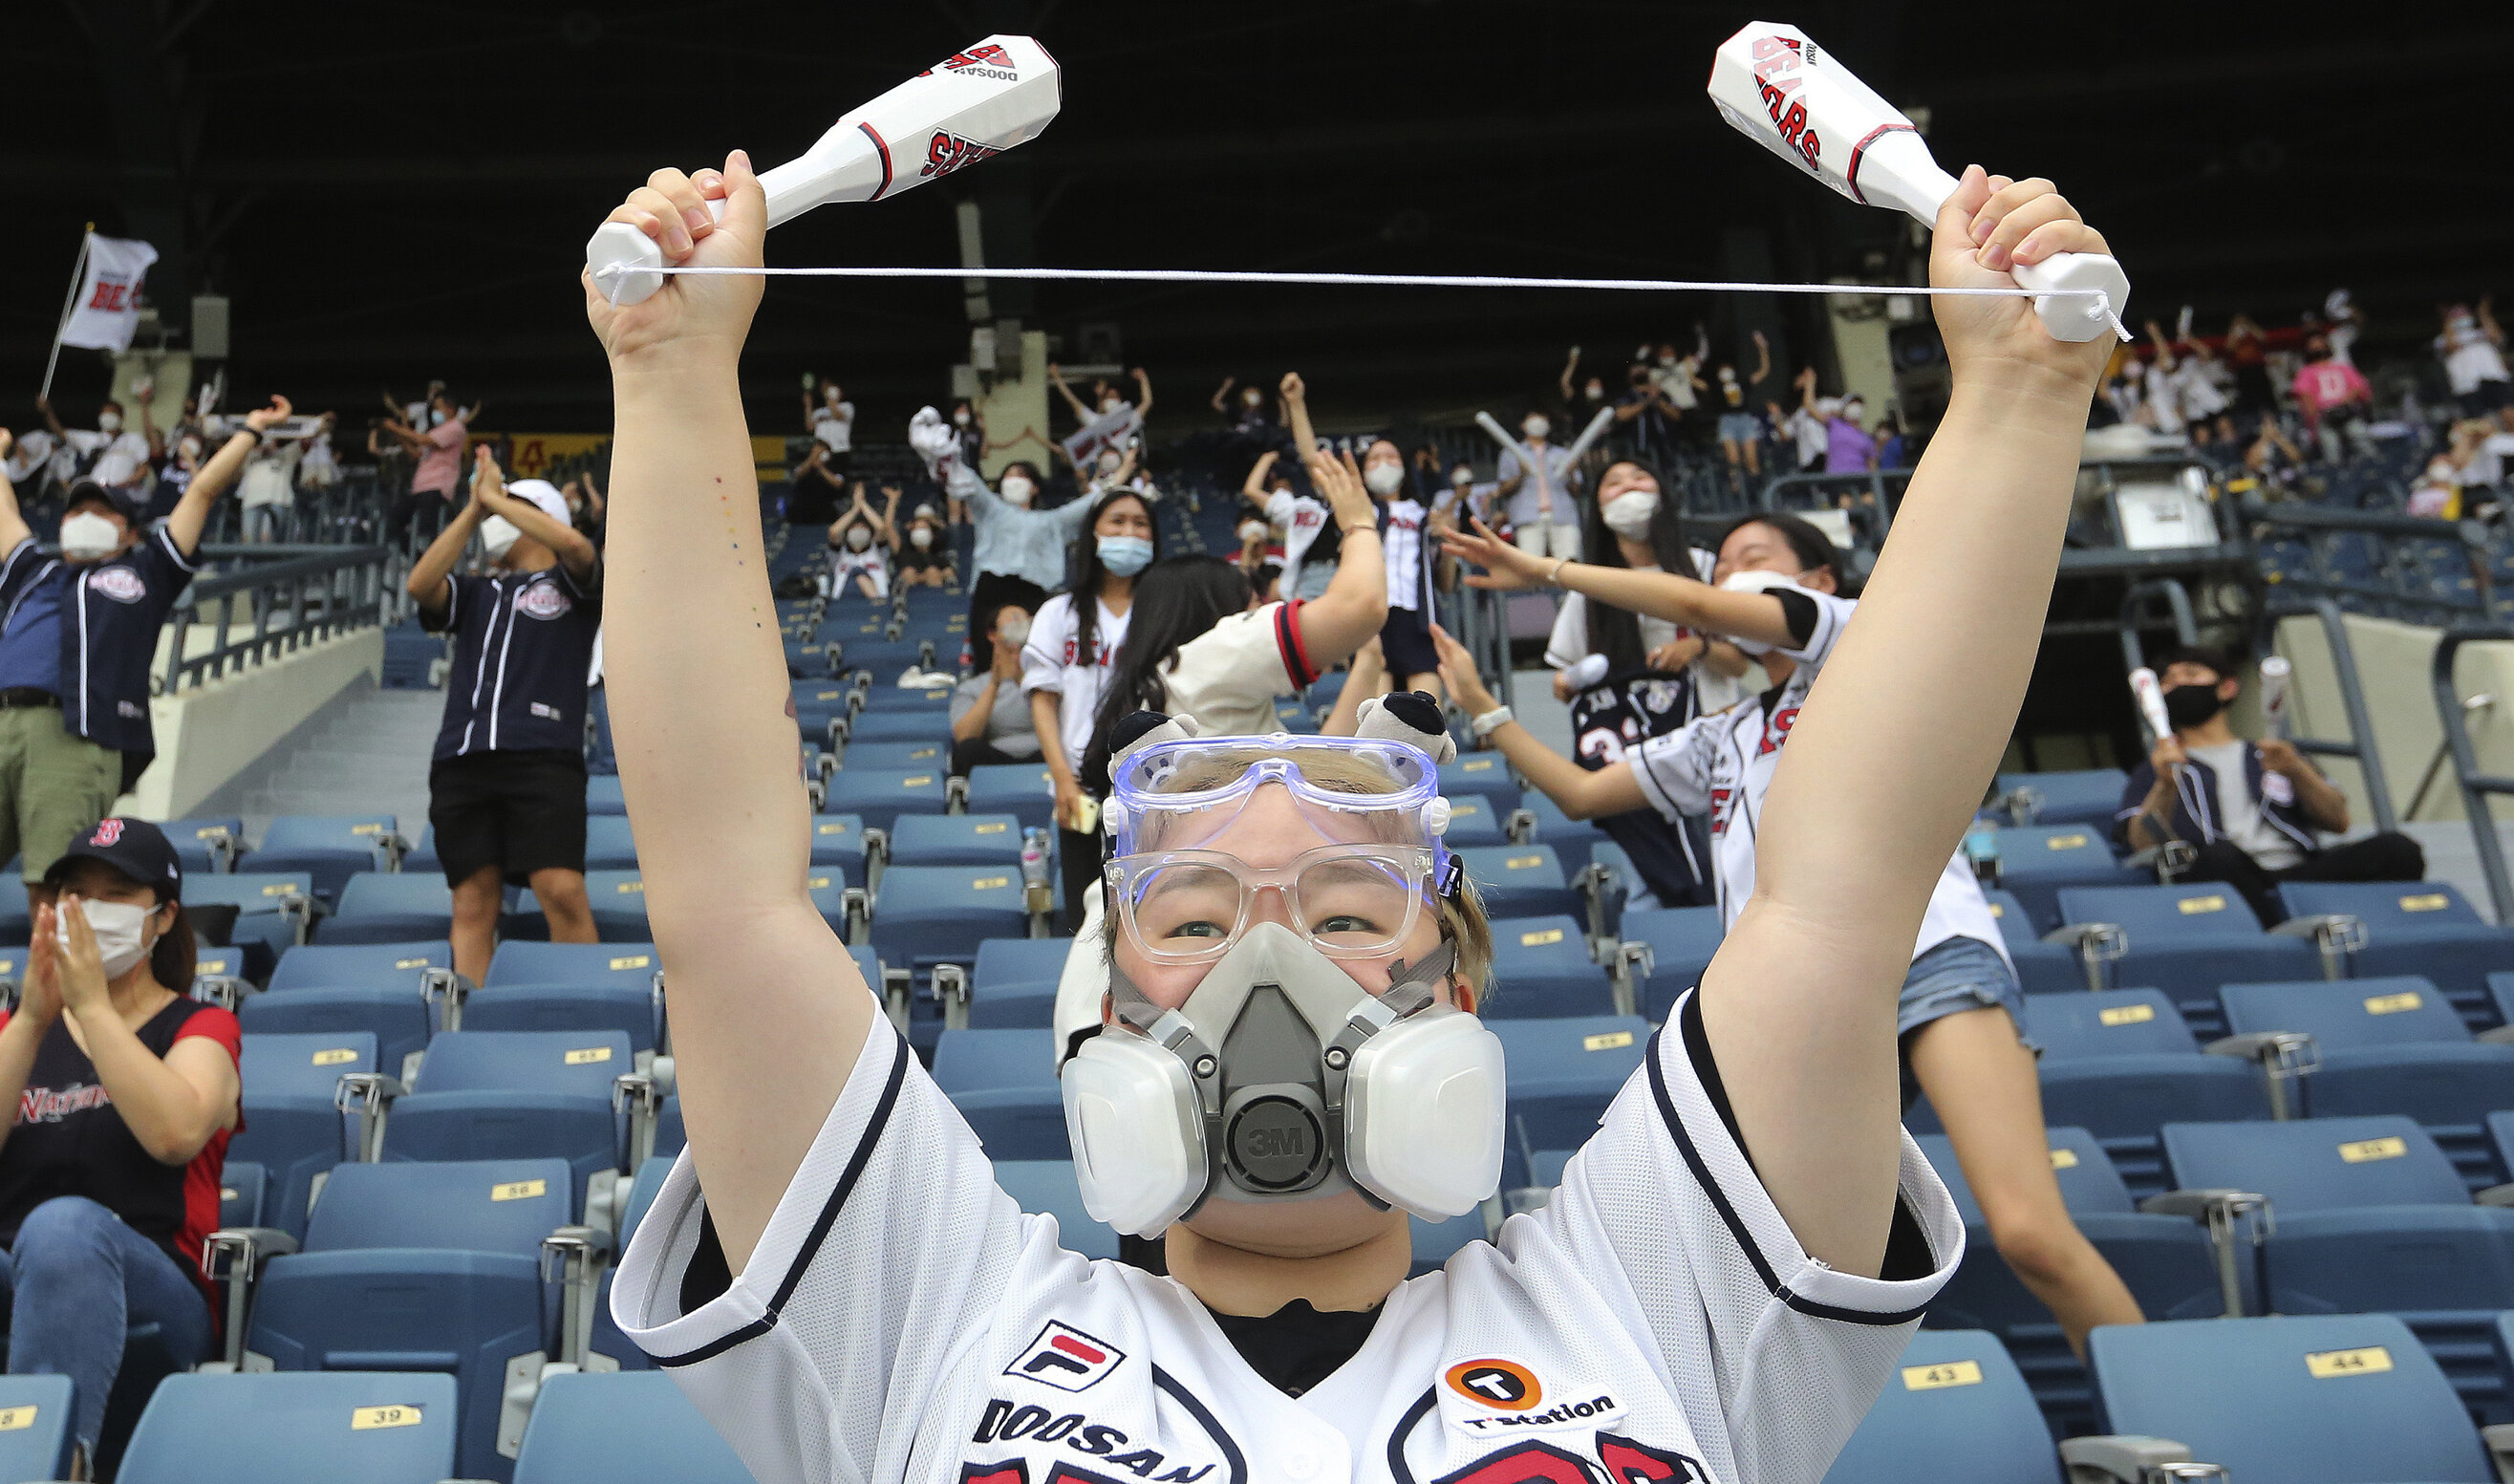 Jocurile Olimpice de la Tokyo| Spectatorii nu au voie să aclame sau să strige, pentru a evita contaminarea